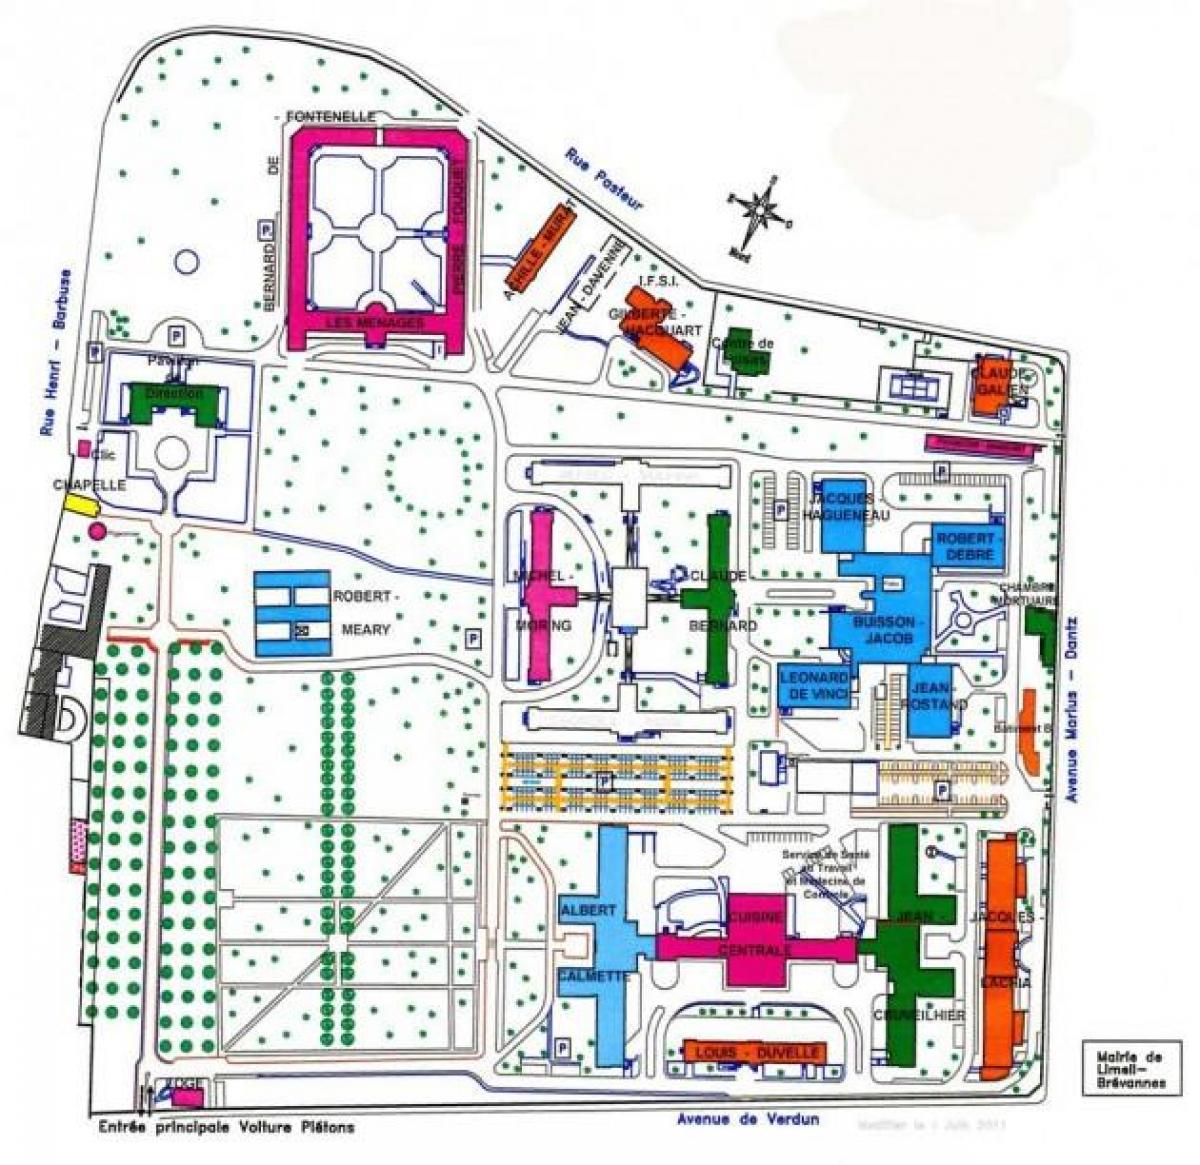 Emile haritası-Roux Hastanesi